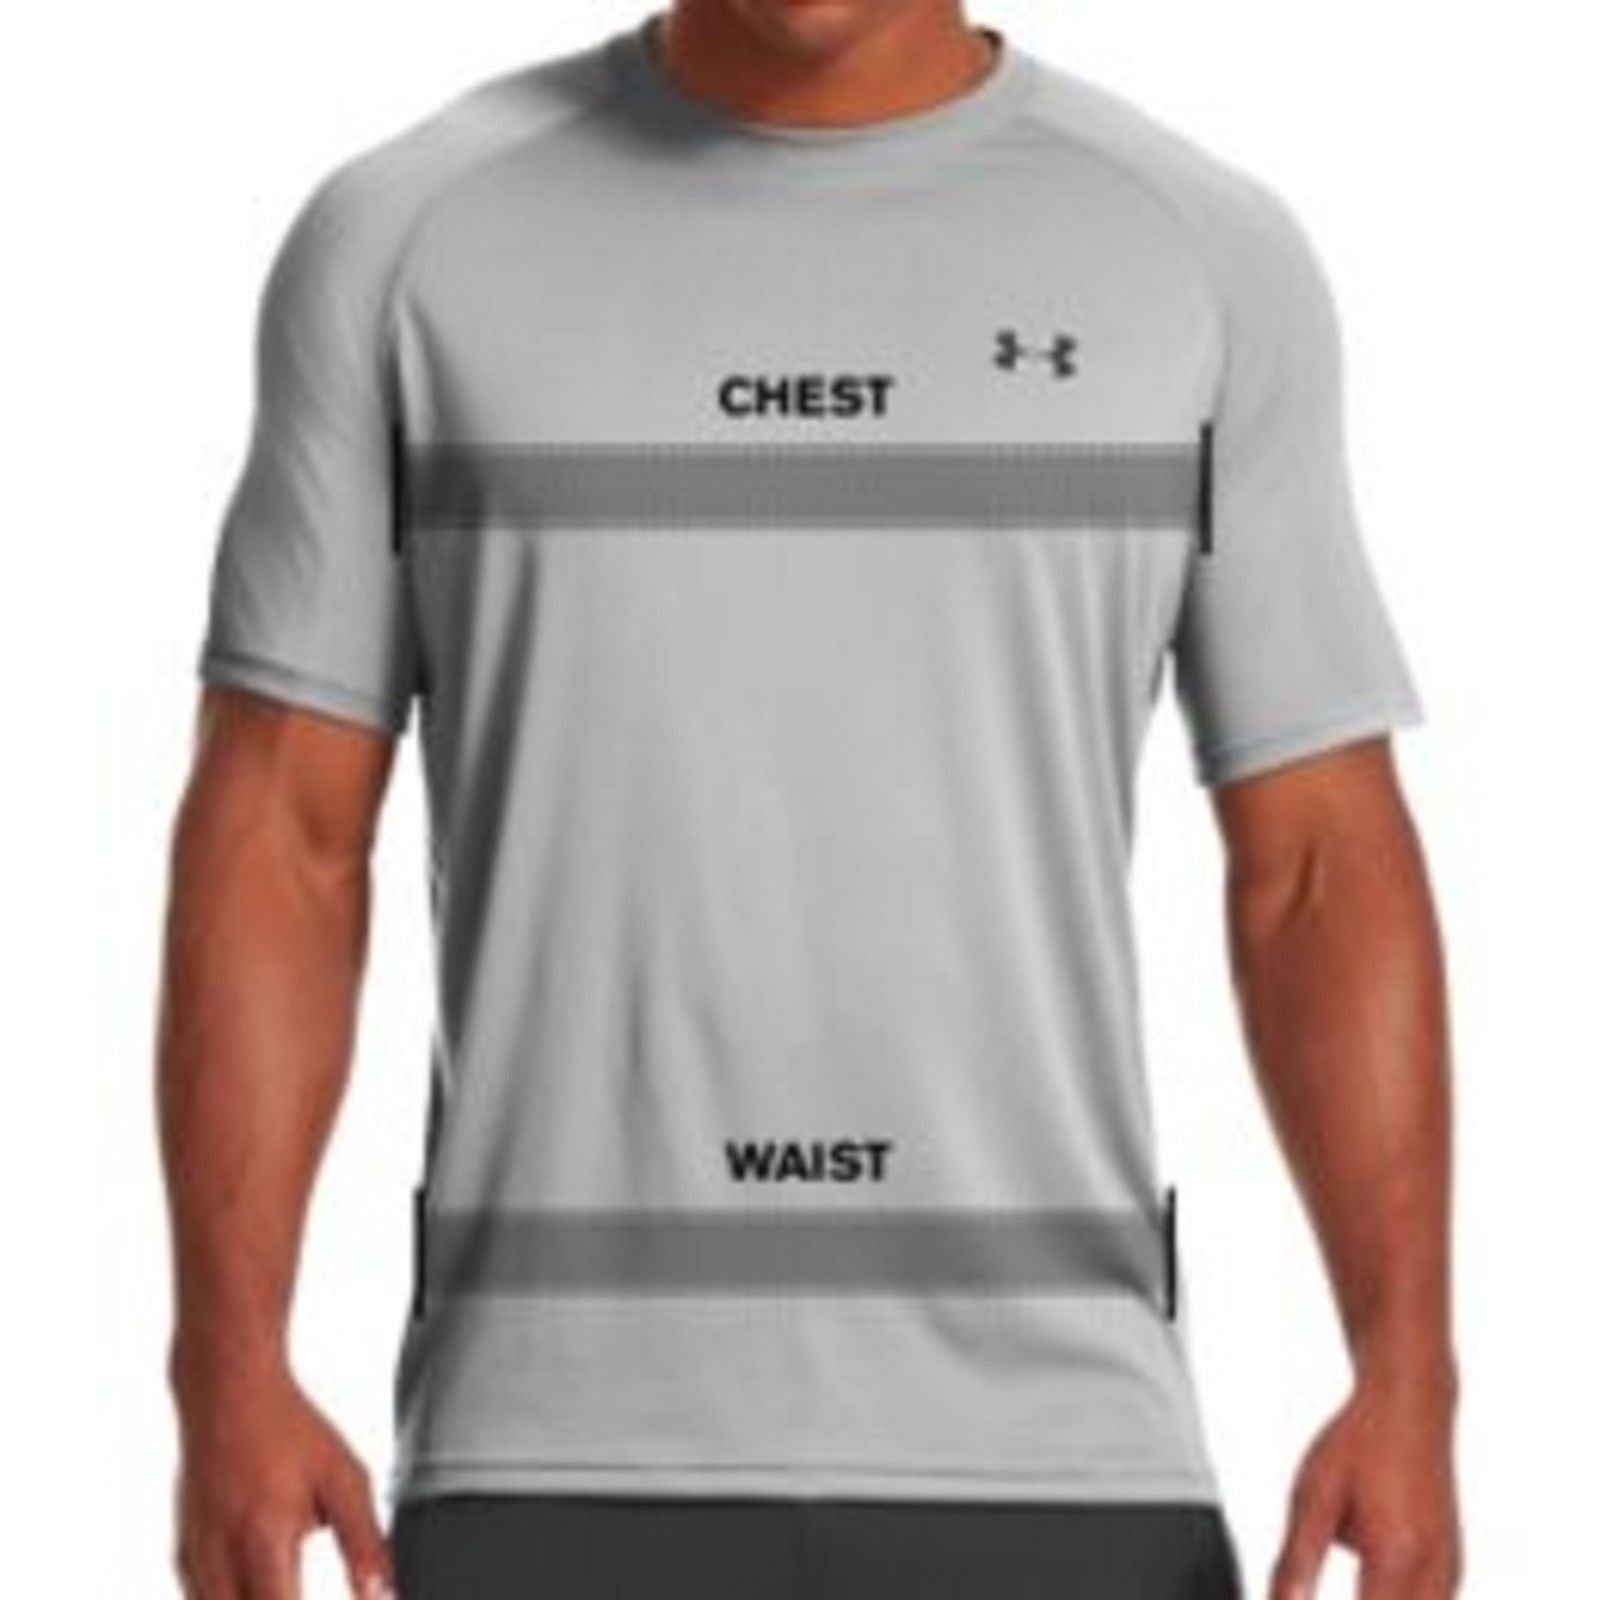 Under Armour Men's Tactical UA Tech Long Sleeve T-Shirt